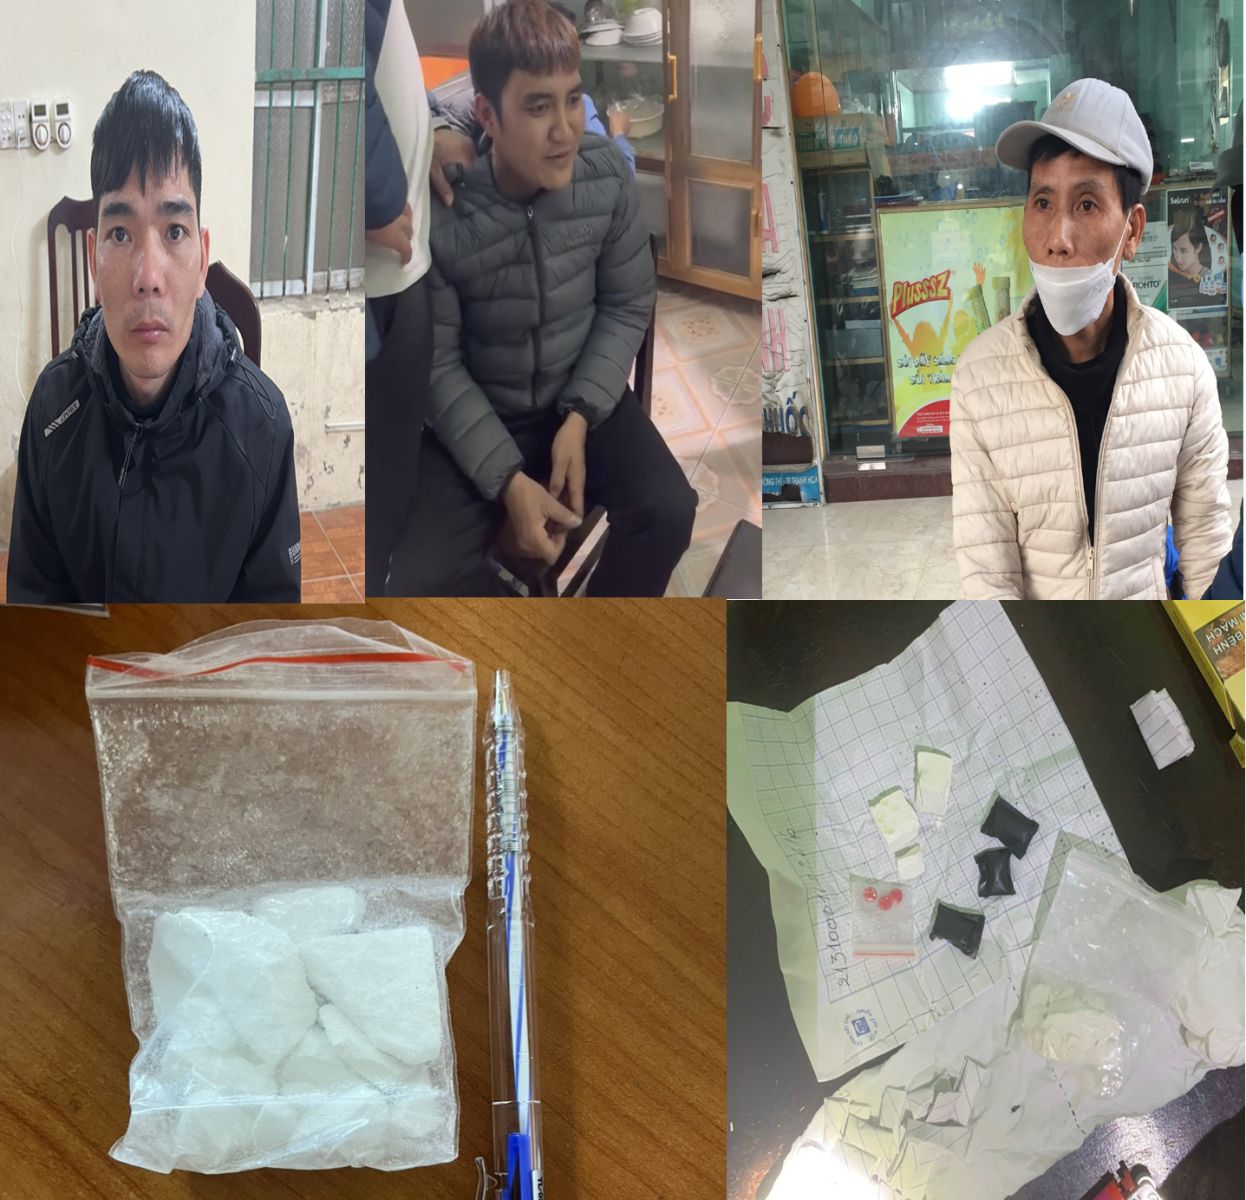 Công an thành phố Thanh Hóa triệt xóa 3 điểm mua bán trái phép chất ma túy - Ảnh 1.